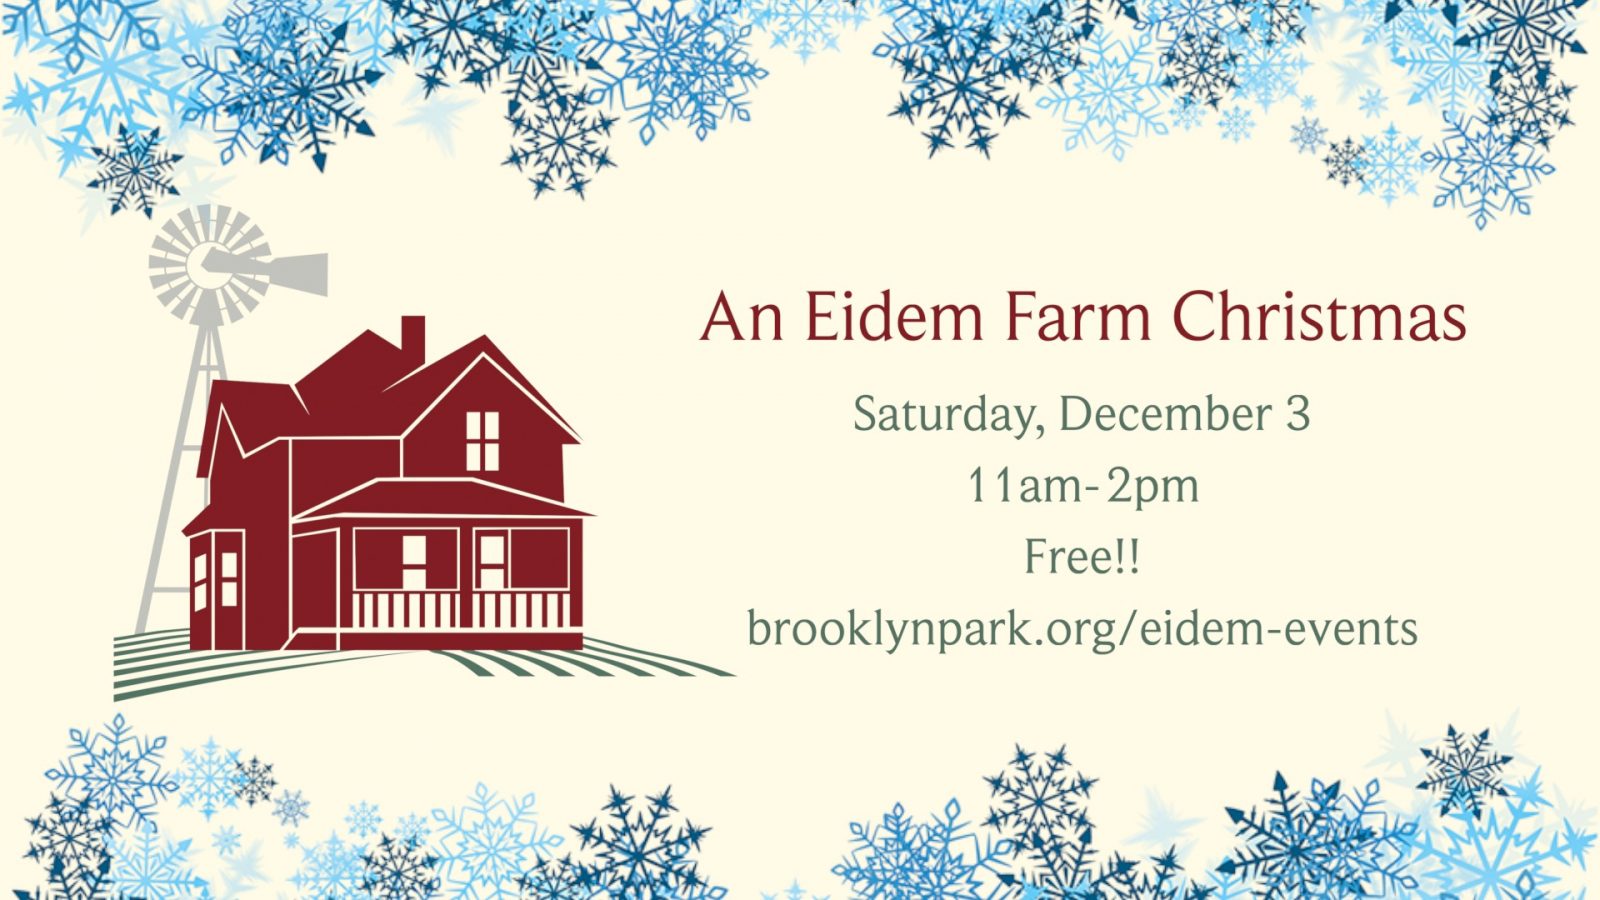 An Eidem Farm Christmas date and time